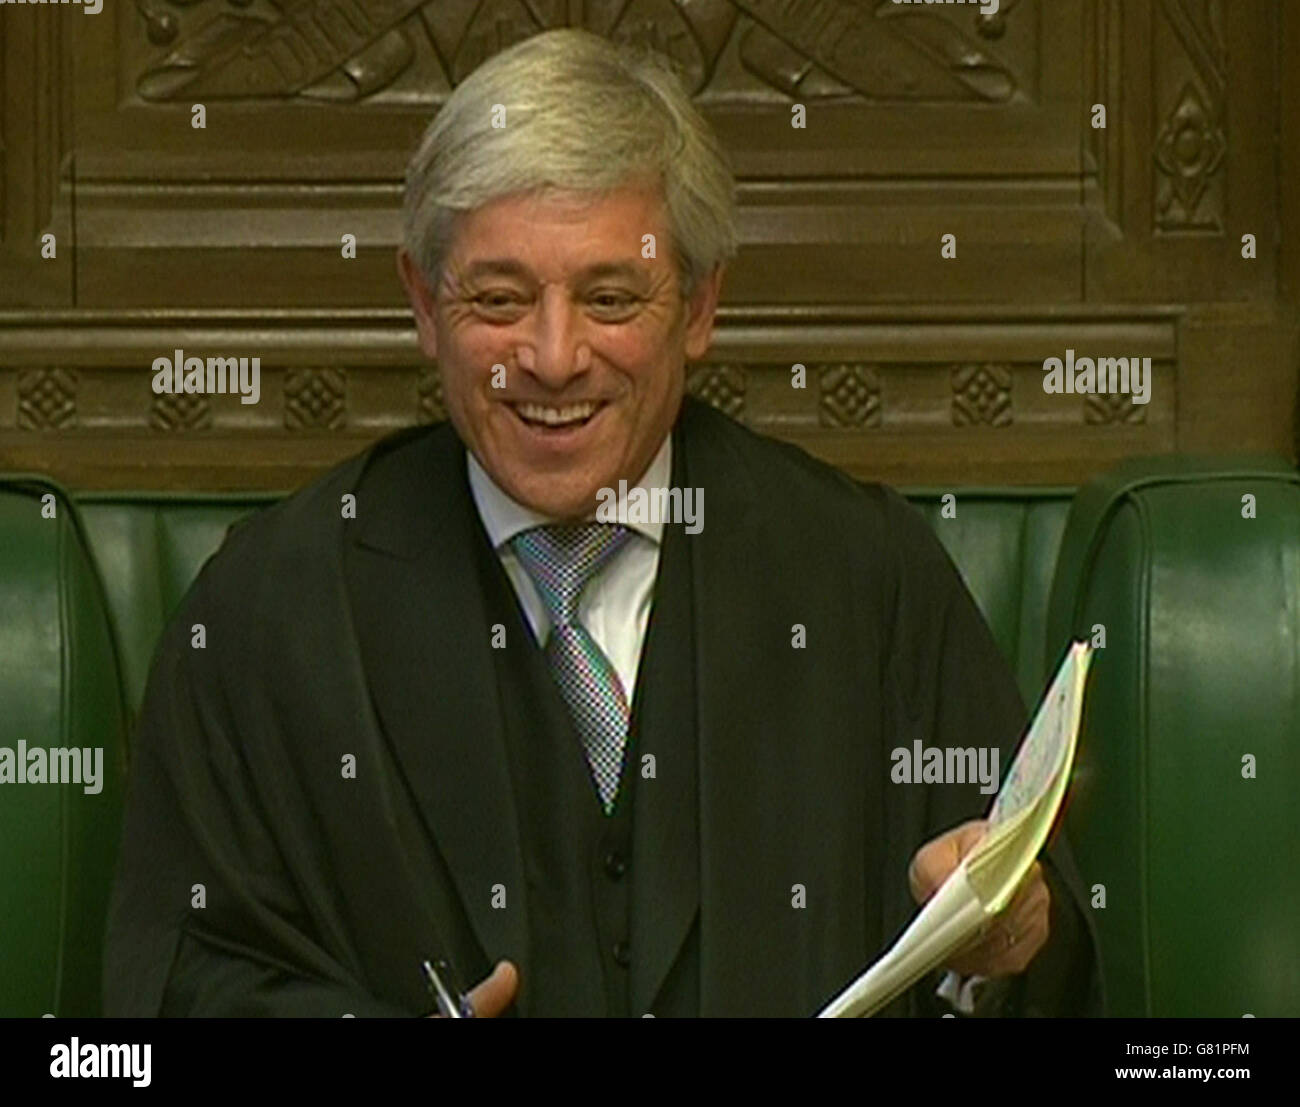 Président de la Chambre des communes John Bercow lors de questions au premier ministre à la Chambre des communes, Londres. Banque D'Images